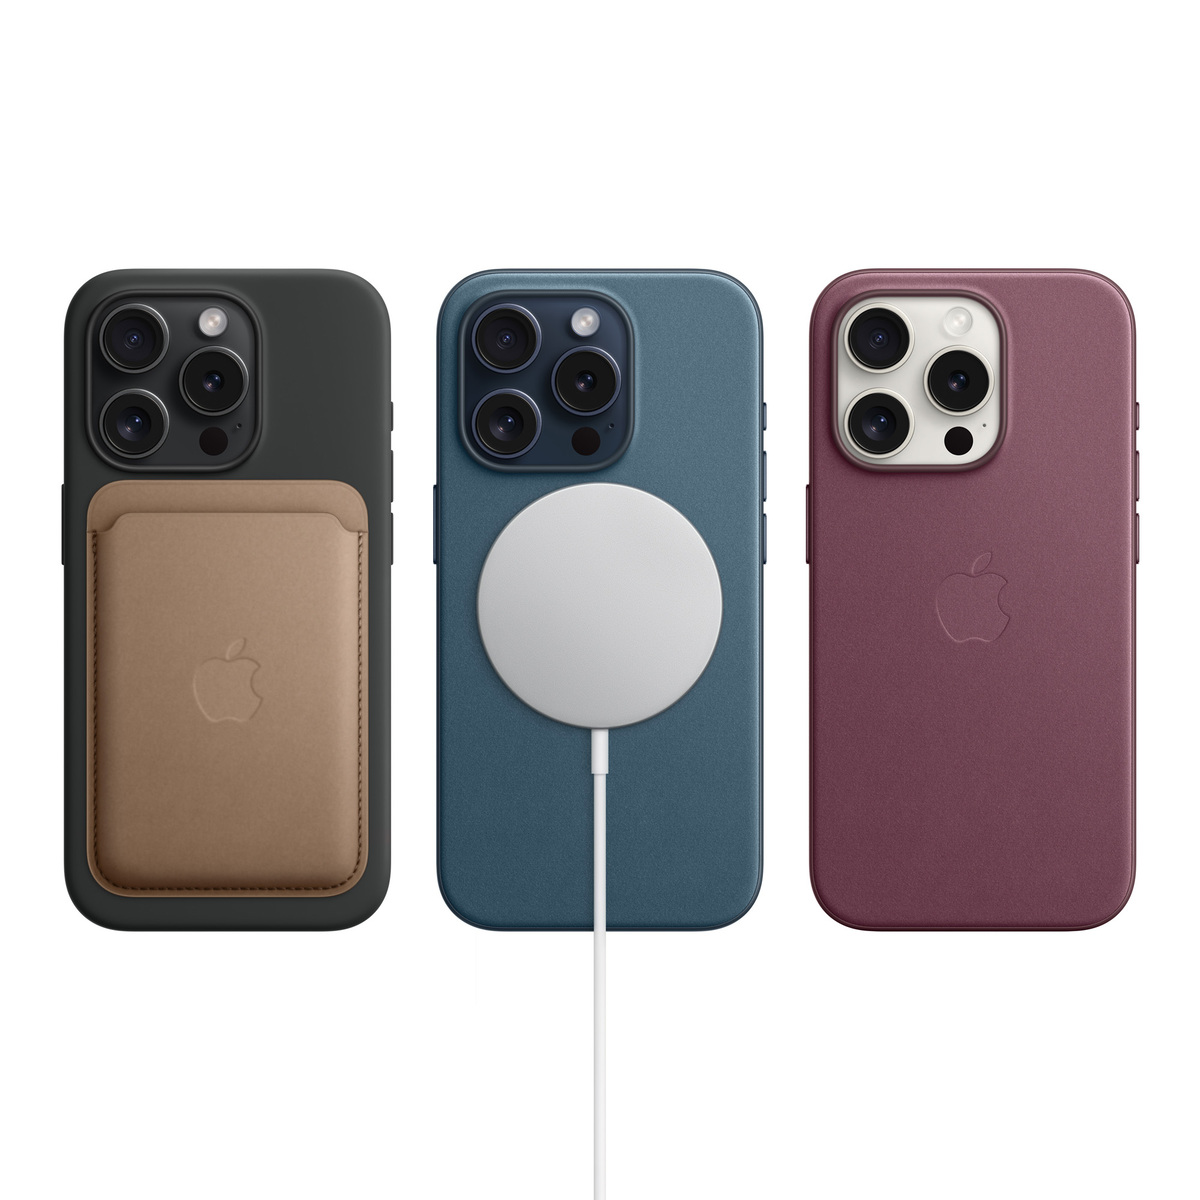 Apple iPhone15 Pro Max, 1 TB Storage, Blue Titanium